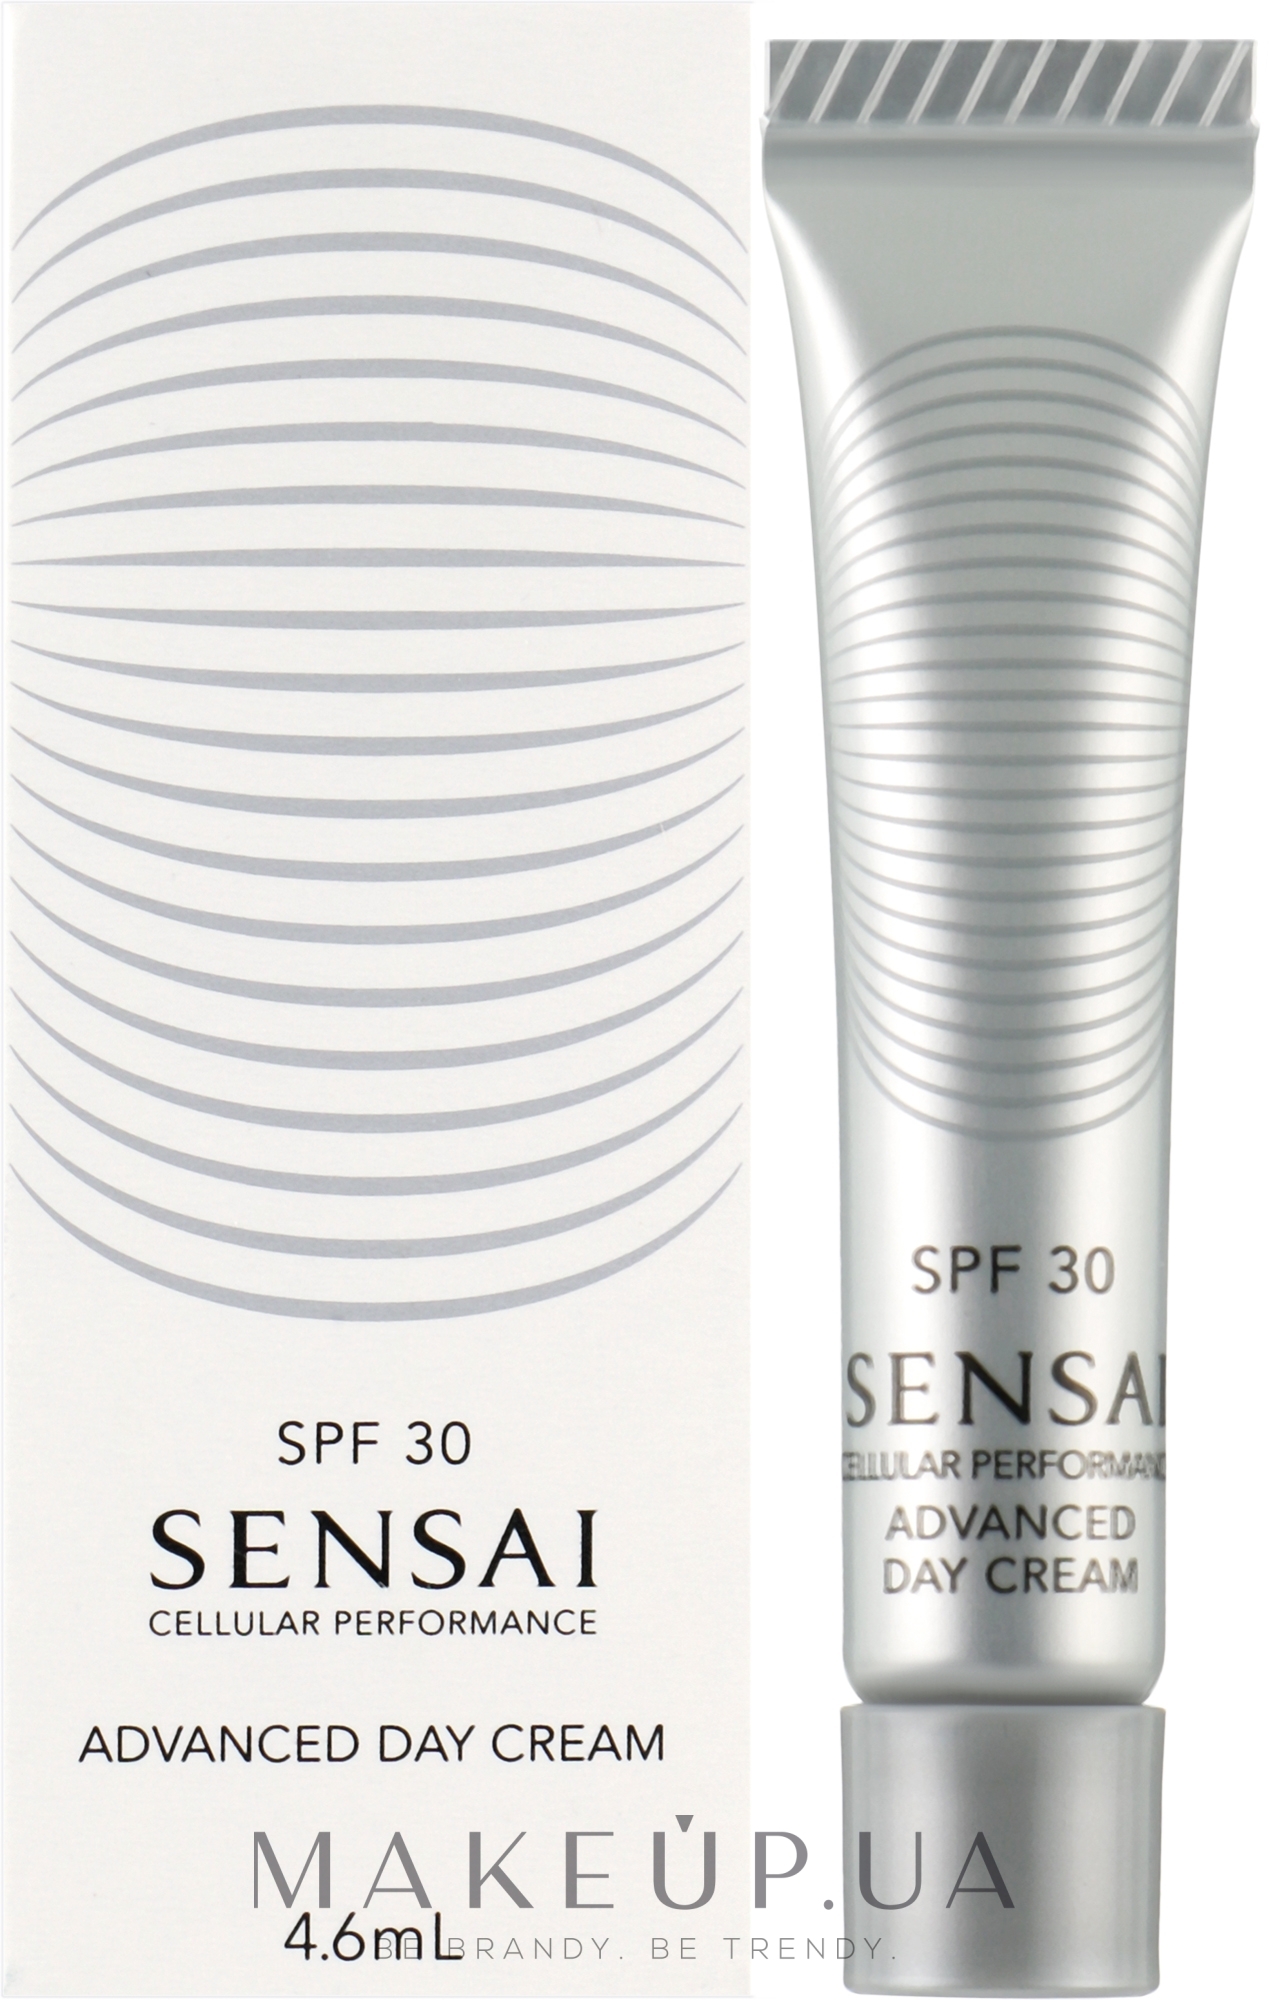 Дневной крем для лица - Sensai Cellular Performance Advanced Day Cream SPF30 (пробник) — фото 4.6ml